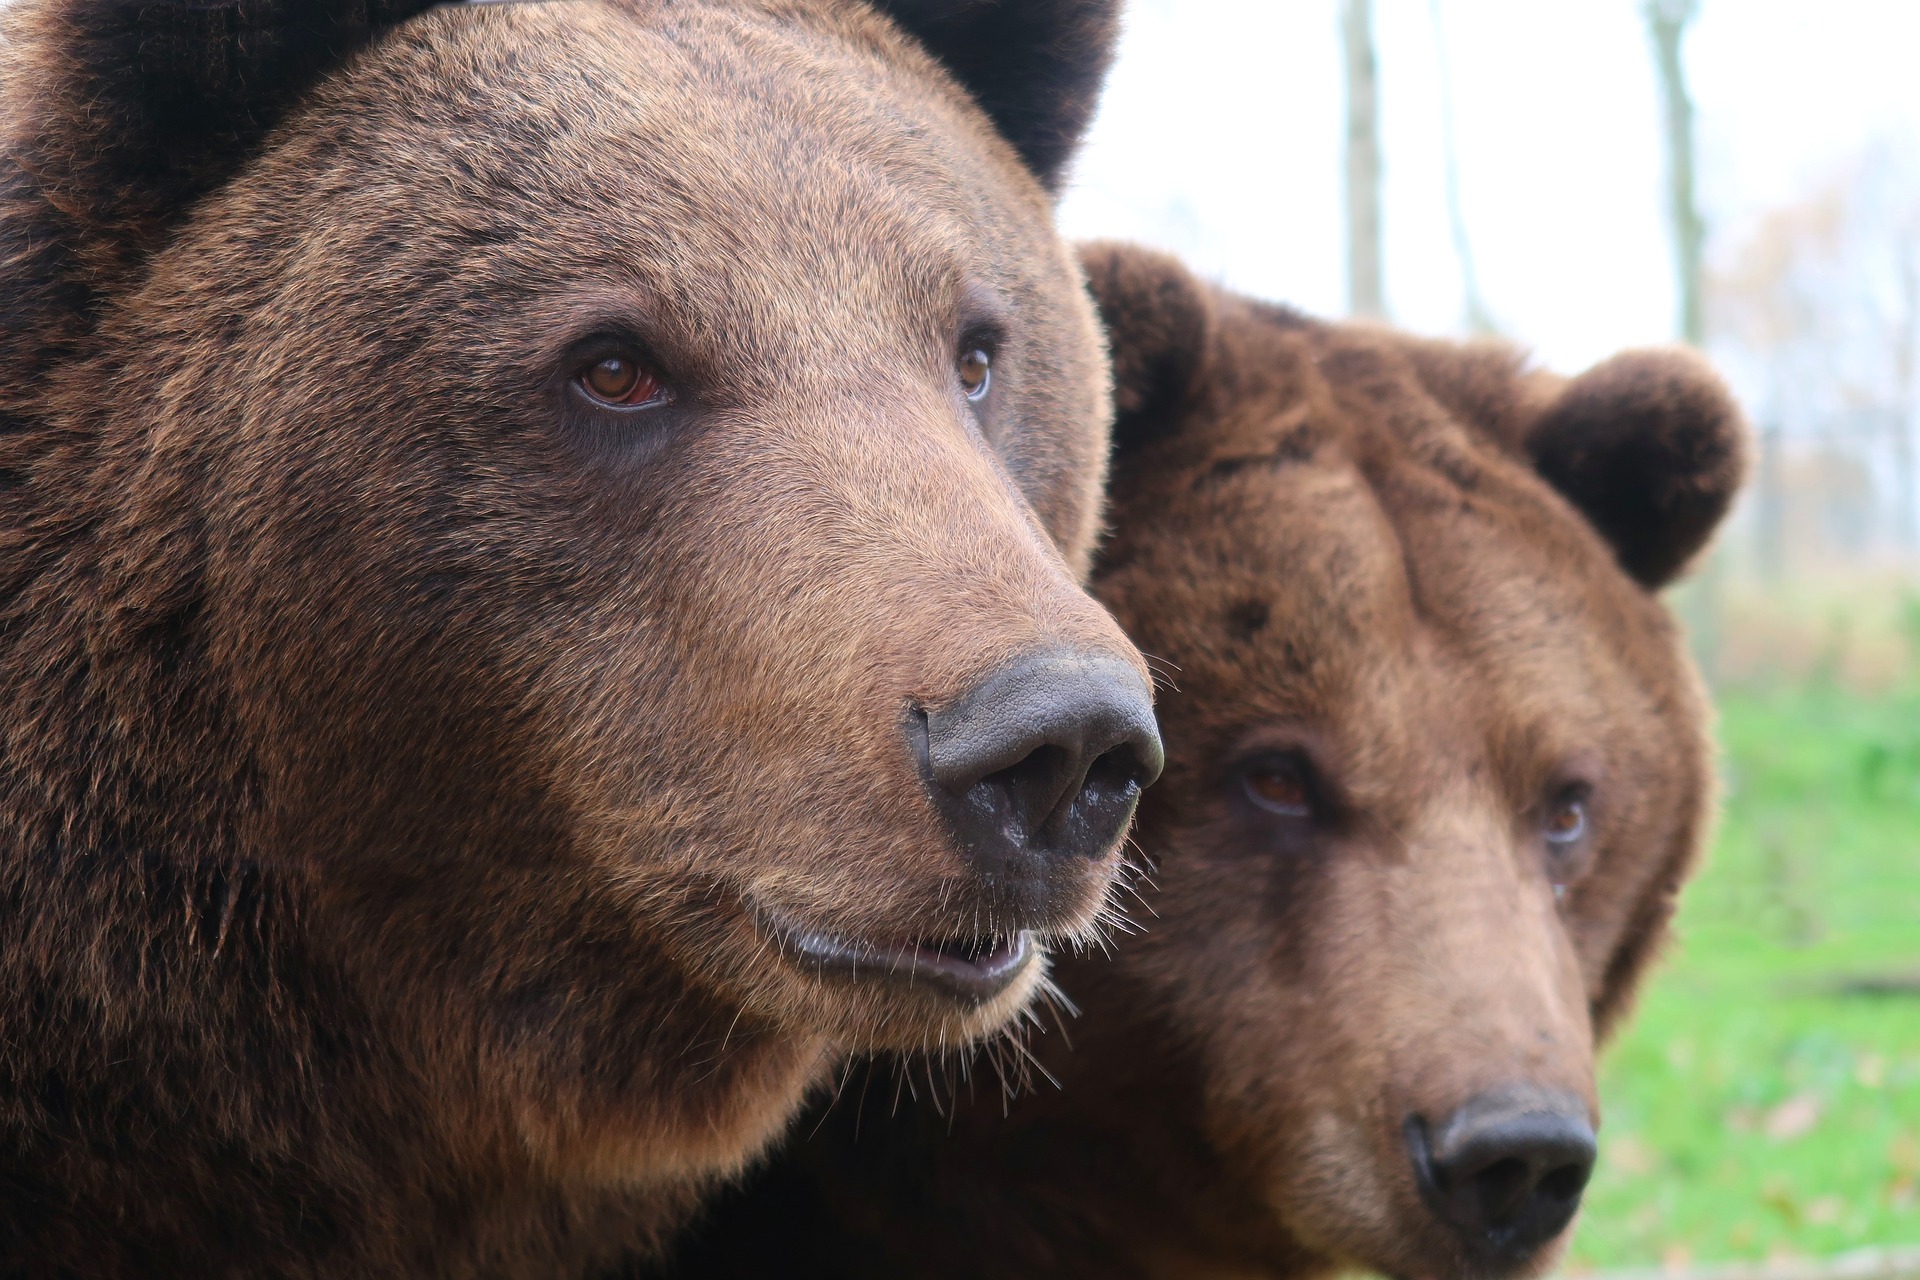 Una mujer de 39 años murió tras ser atacada por osos. (Foto Prensa Libre: Pixabay)